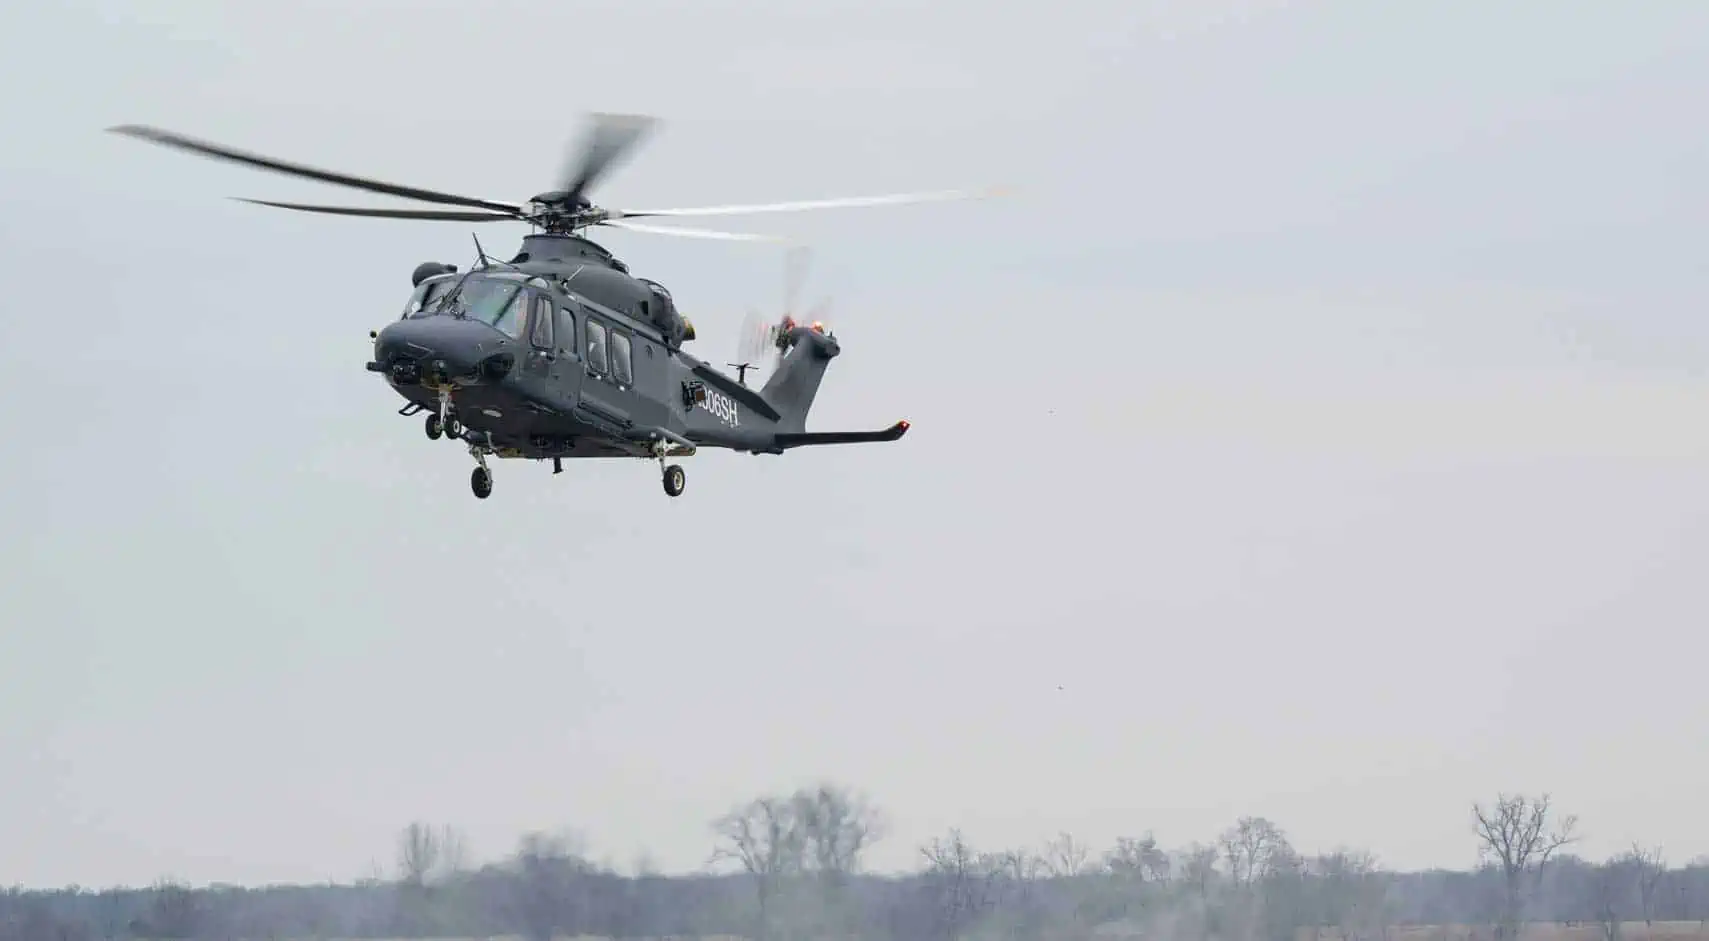 Testflugzeug vom Typ MH-139A bereitet sich auf die Landung im Boeing-Werk in Ridley Park vor